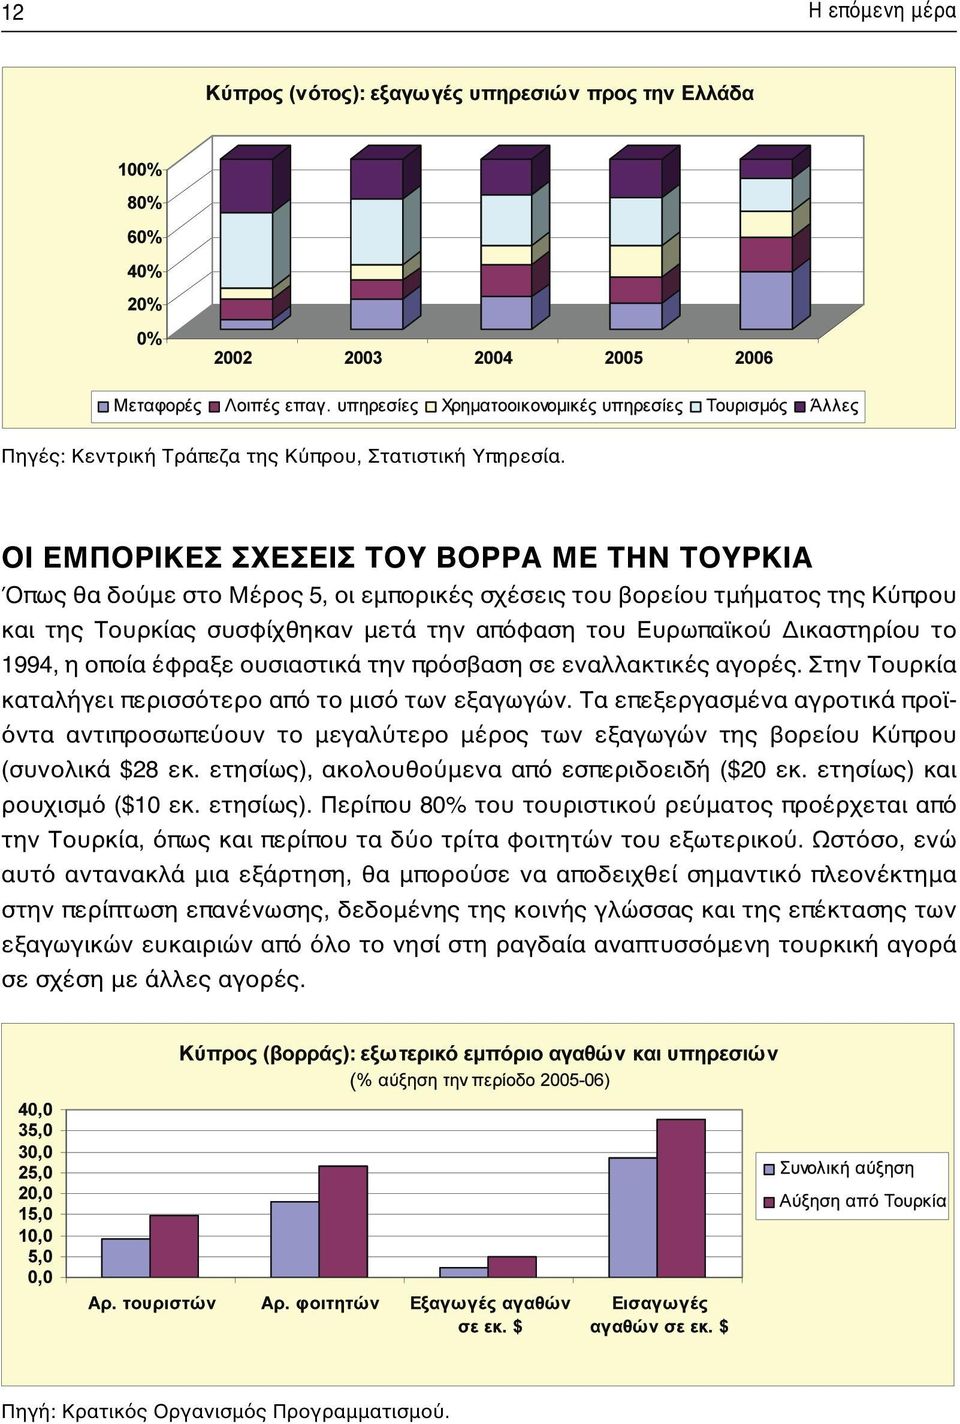 το 1994, η οποία έφραξε ουσιαστικά την πρόσβαση σε εναλλακτικές αγορές. Στην Τουρκία καταλήγει περισσότερο από το μισό των εξαγωγών.